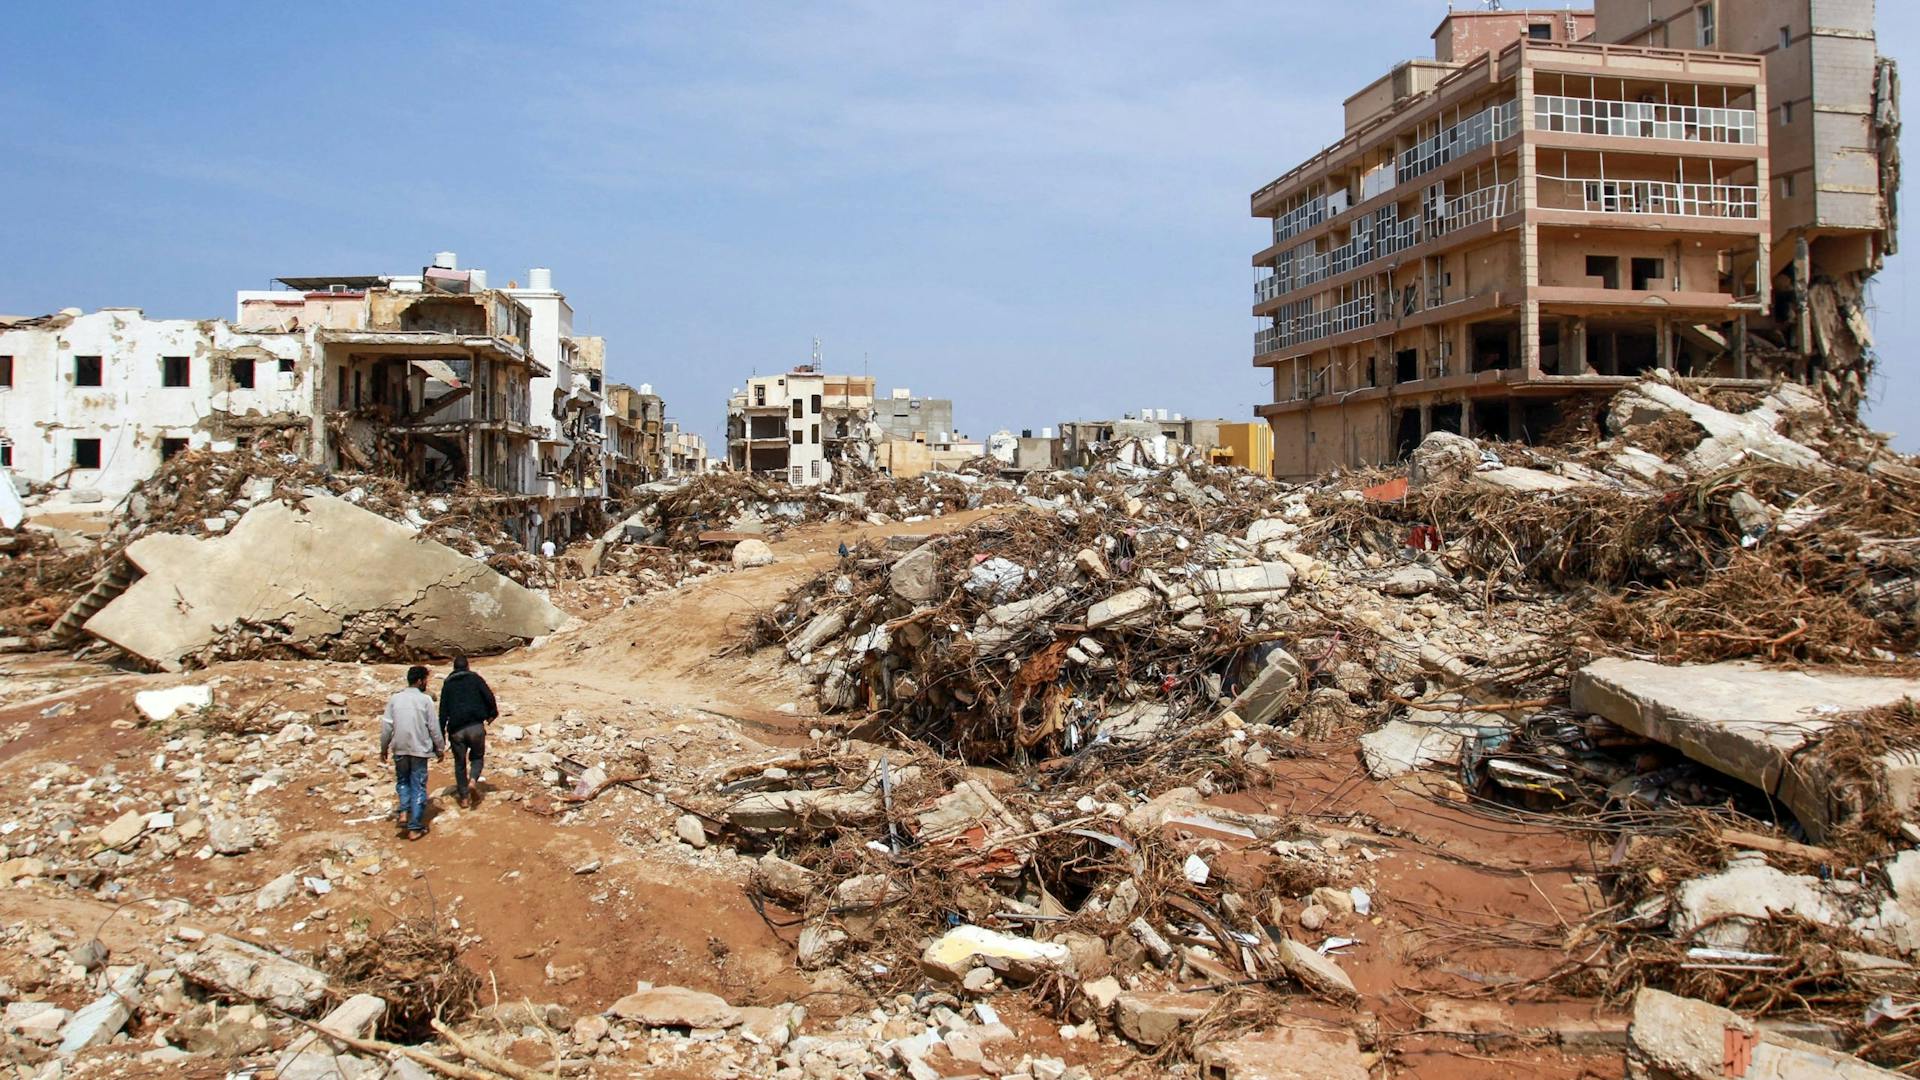 Mannen lopen langs puin van gebouwen veroorzaakt door overstromingen in Derna, Oost-Libië, op 11 september 2023. Overstromingen in het oosten van Libië hebben alleen al in de kuststad Derna aan de Middellandse Zee aan meer dan 2300 mensen het leven gekost, zeiden de hulpdiensten van de regering in Tripoli op 12 september.